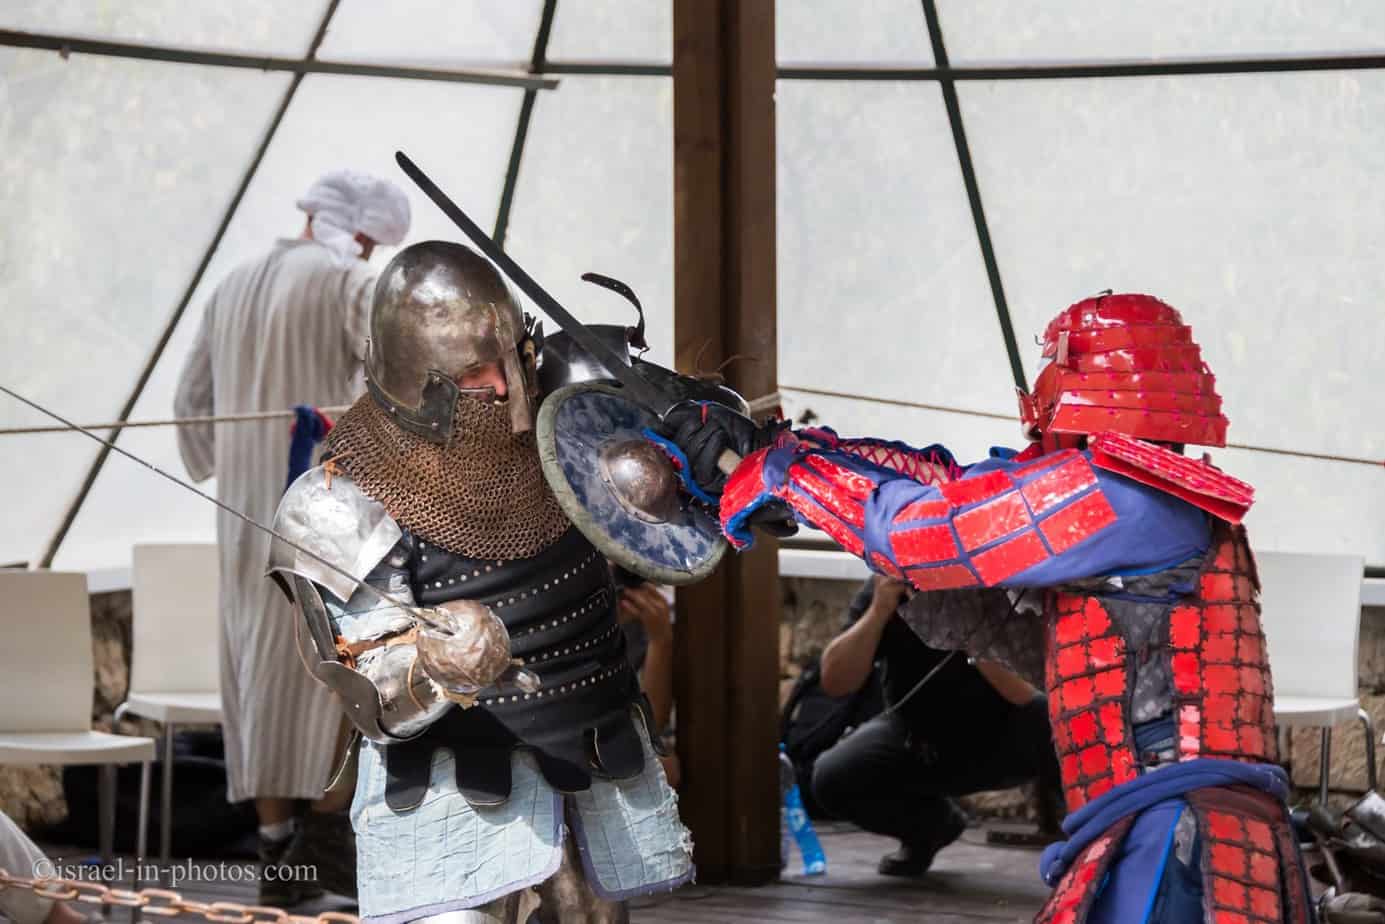 Samurai vs Knight